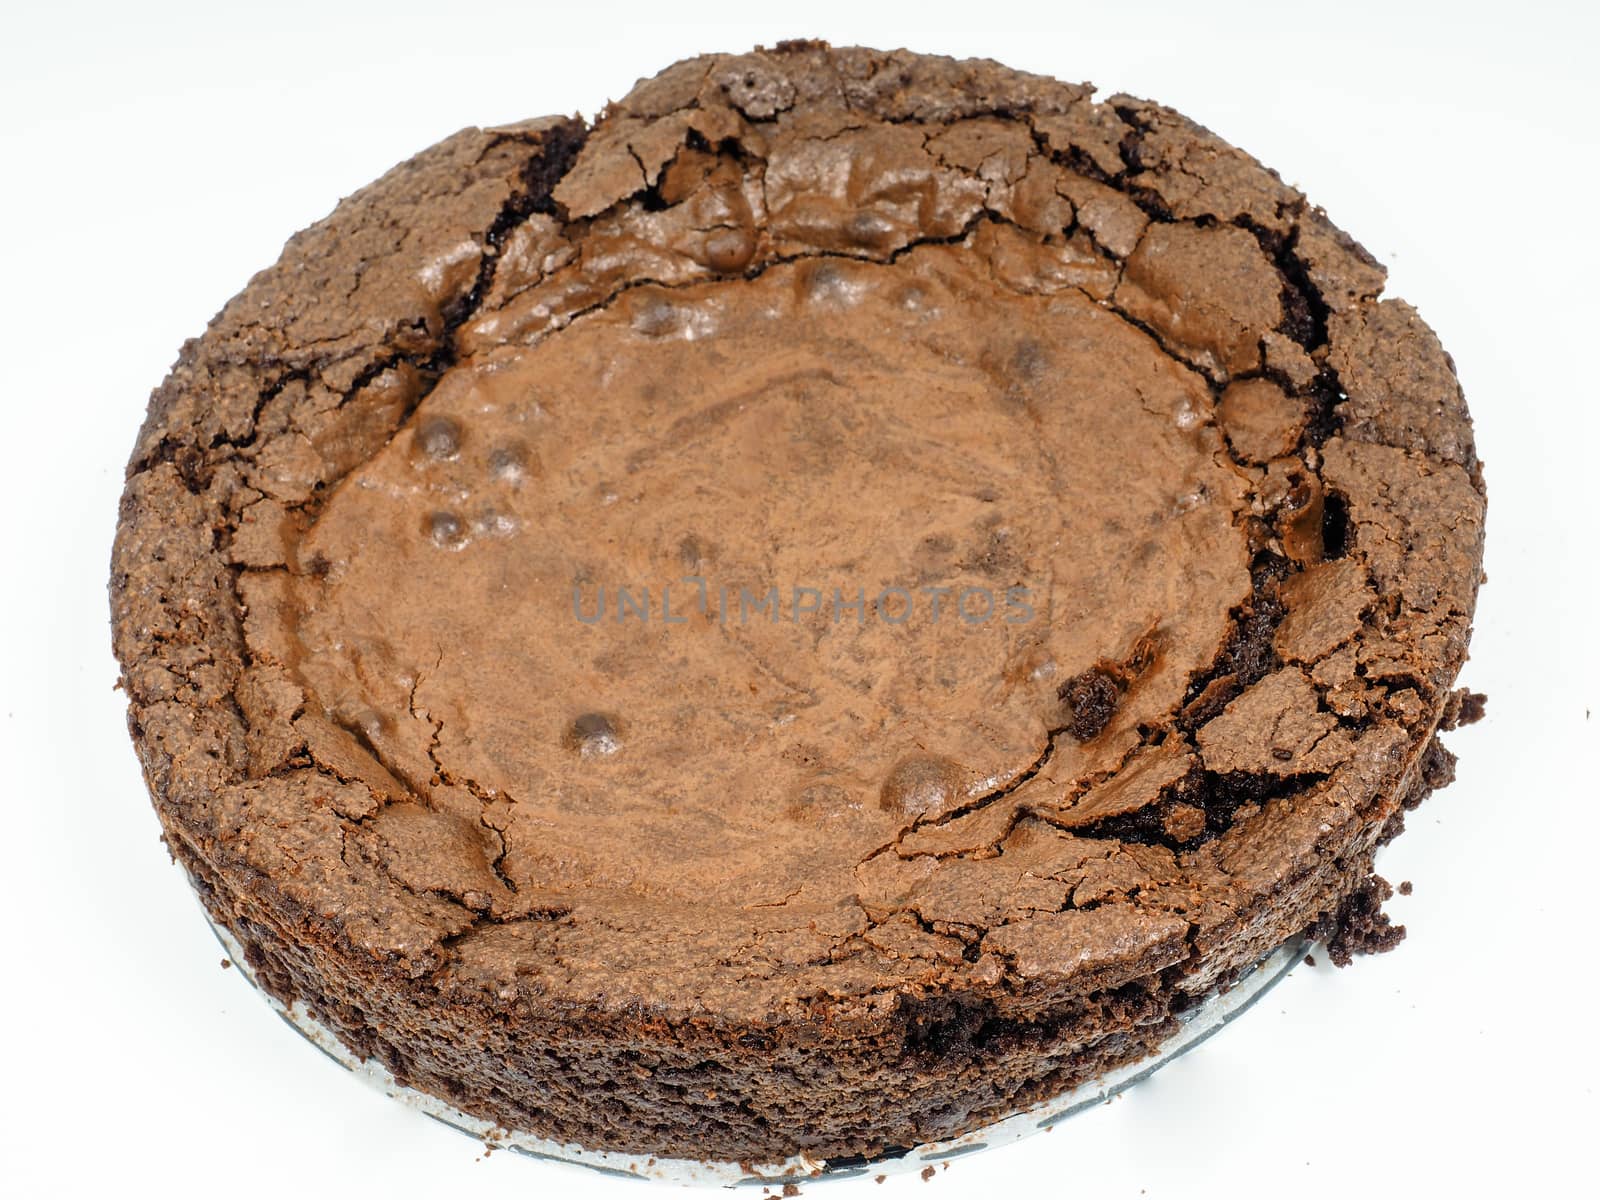 Closeup of a fresh made crackled chocolate cake